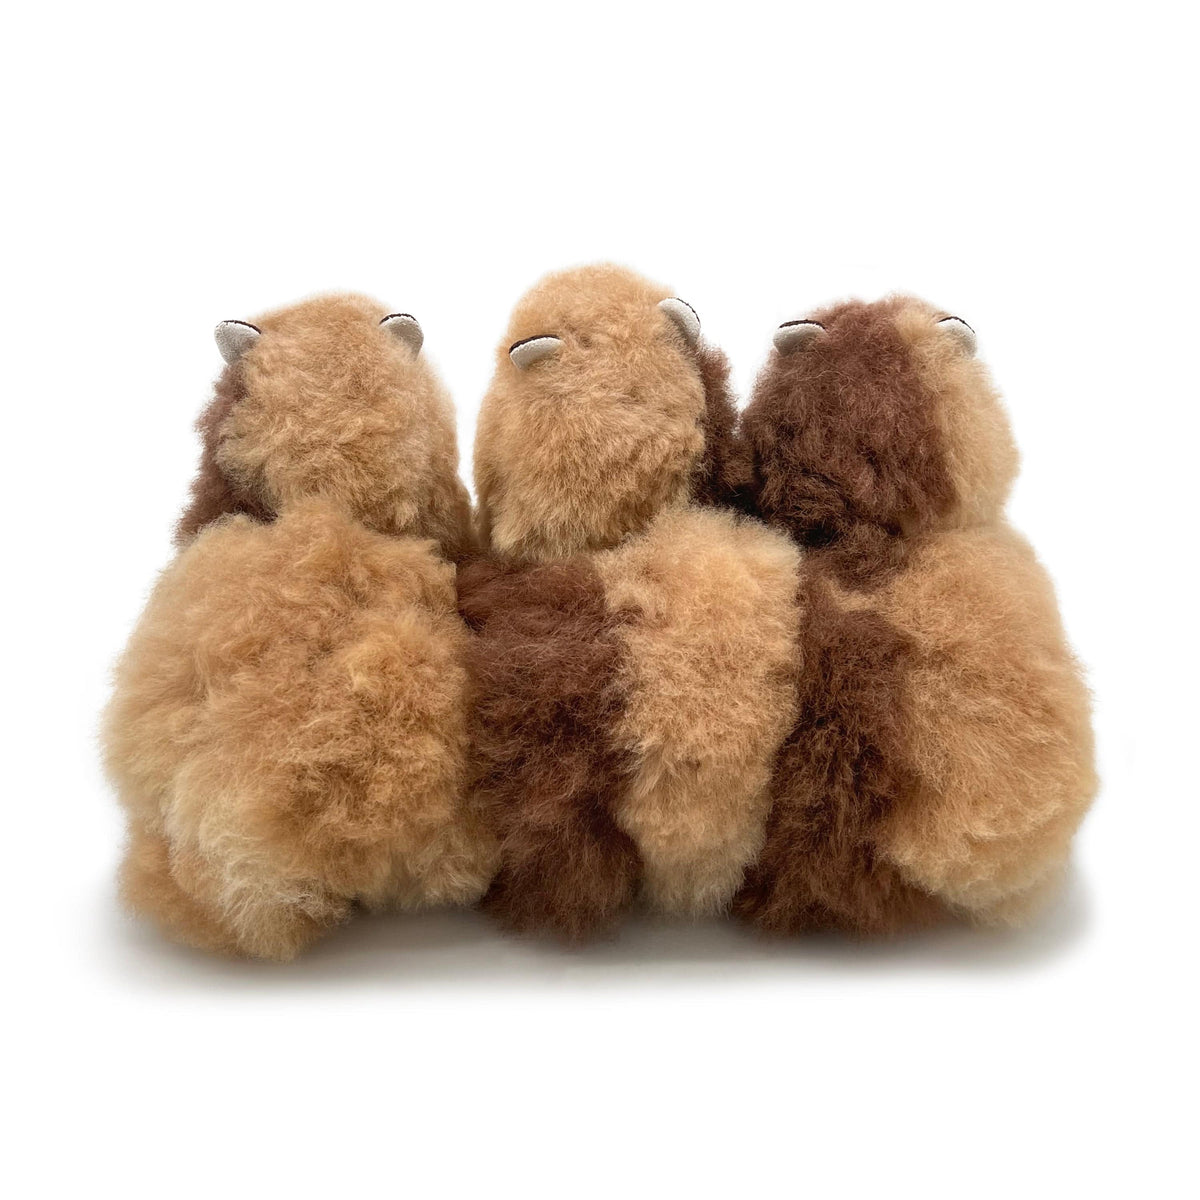 Butterscotch - Piccolo giocattolo di alpaca (23 cm) - Edizione limitata